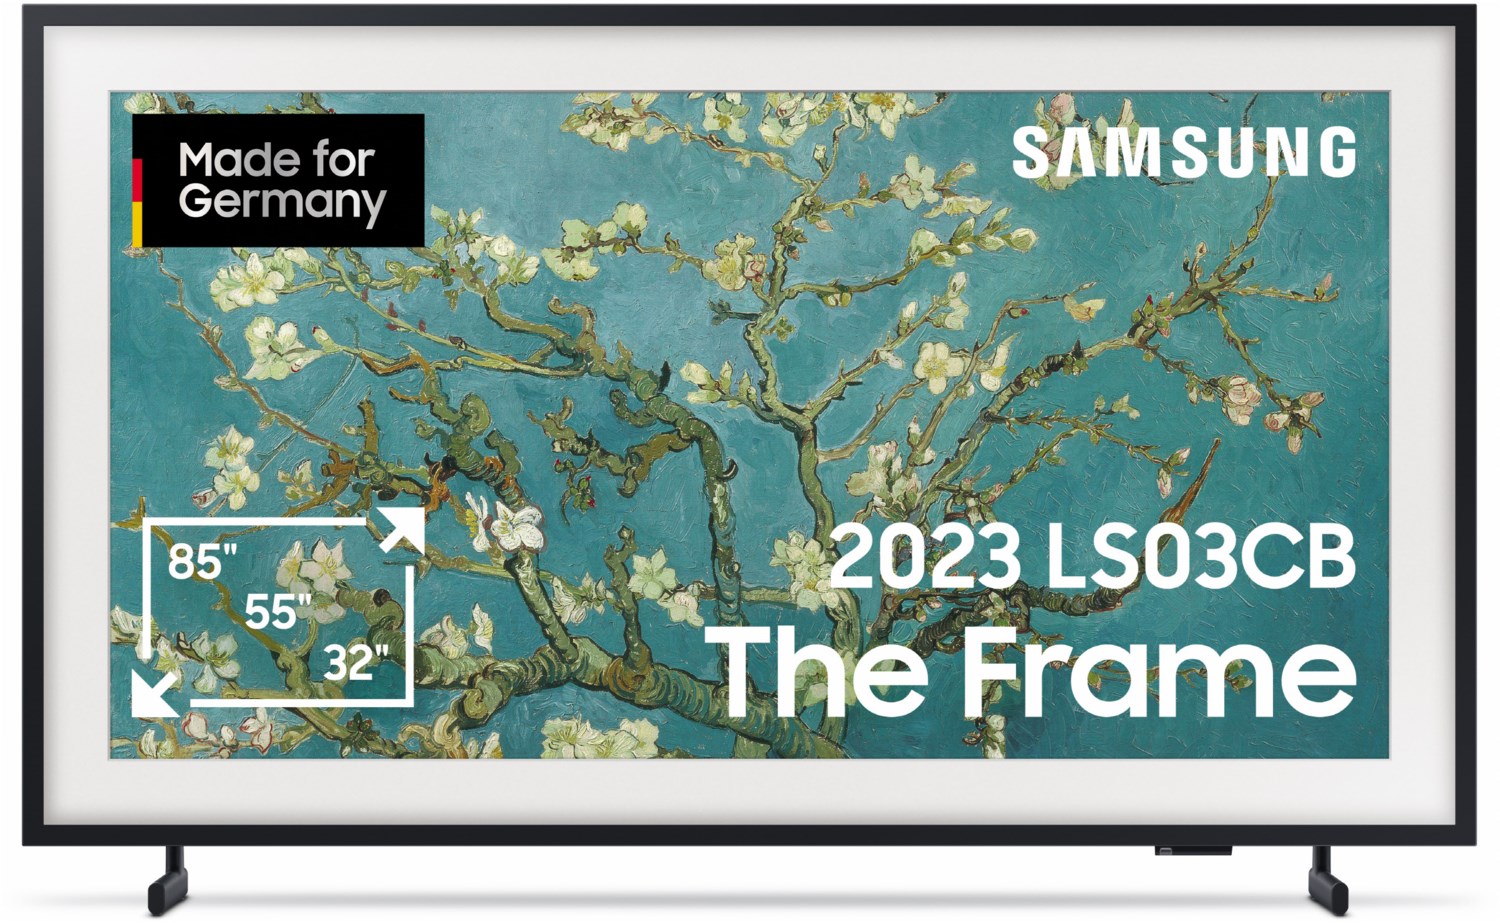 Samsung QLED 4K The Frame 32 Zoll Fernseher, mattes Display, austauschbare Rahmen, Art Mode, Smart TV [2023]